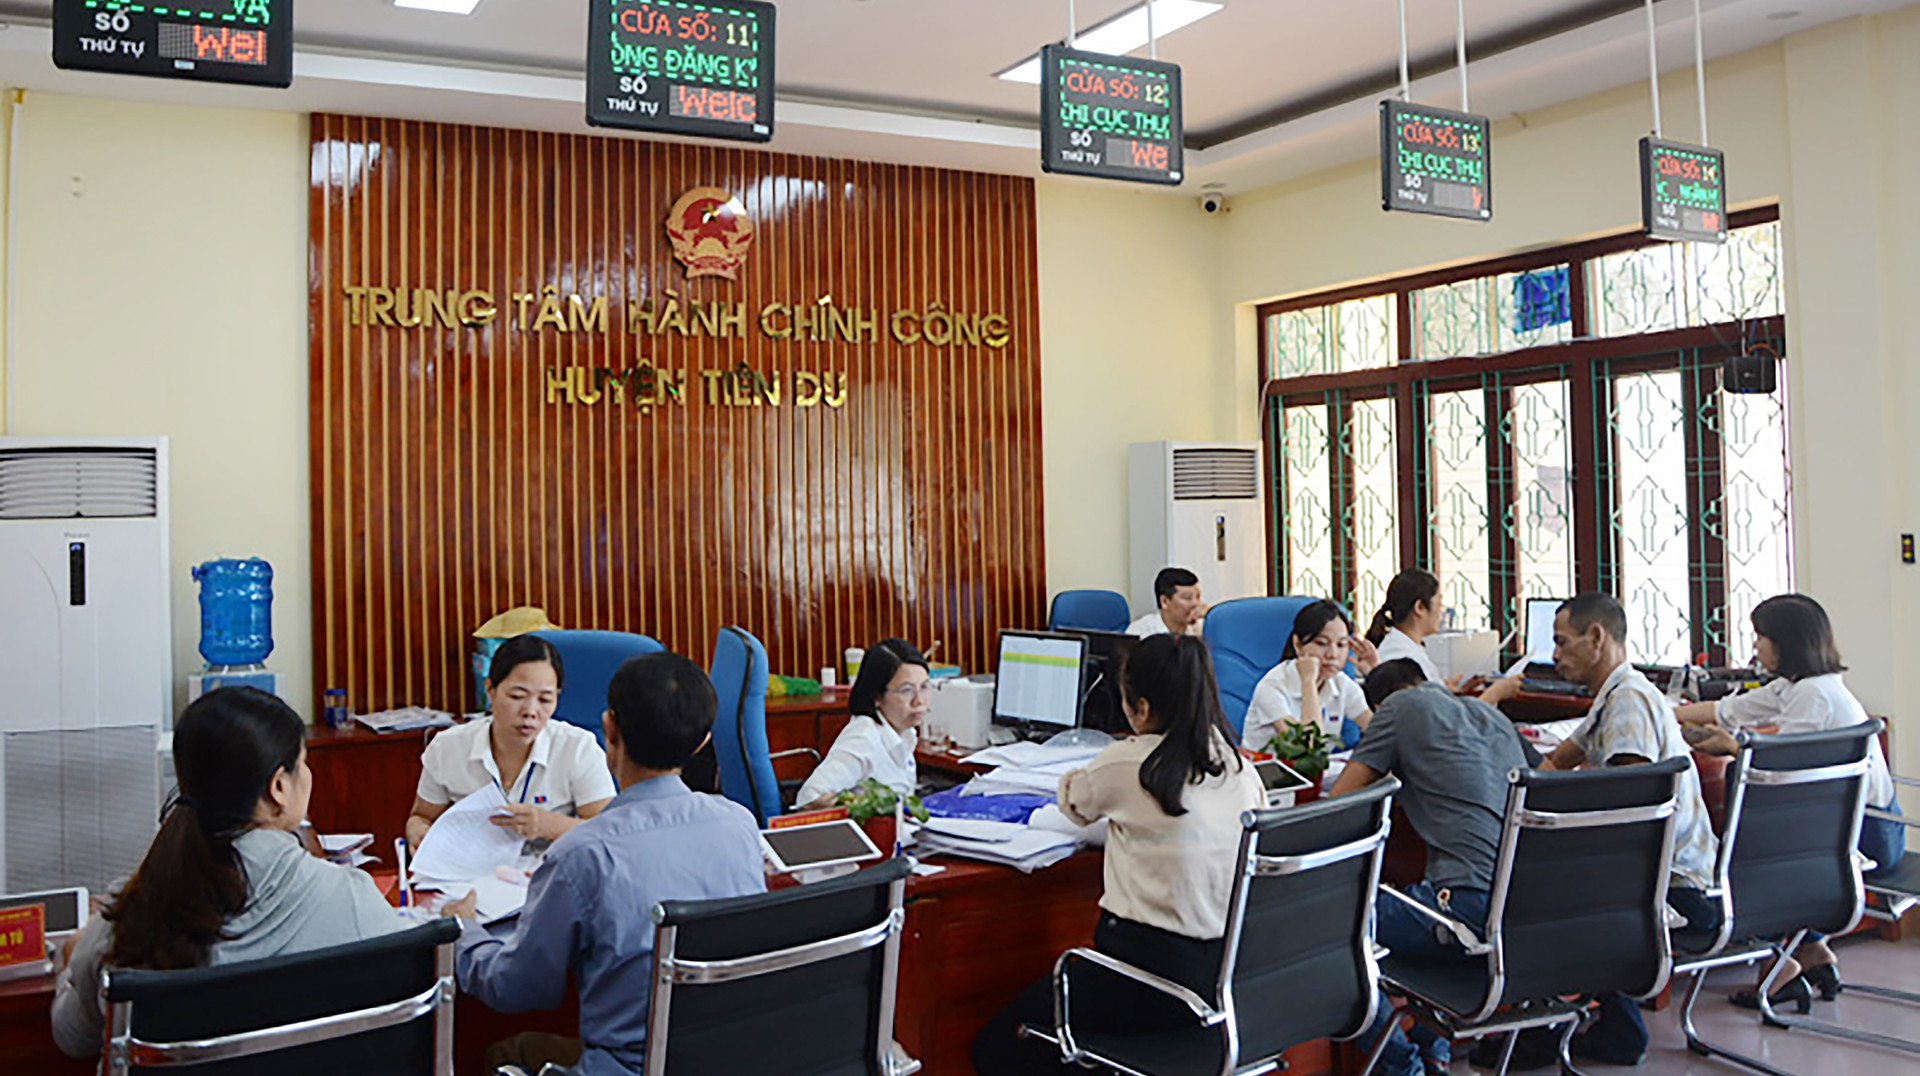 Bắc Ninh đạt kết quả quan trọng trong xây dựng chính quyền điện tử - Ảnh 2.